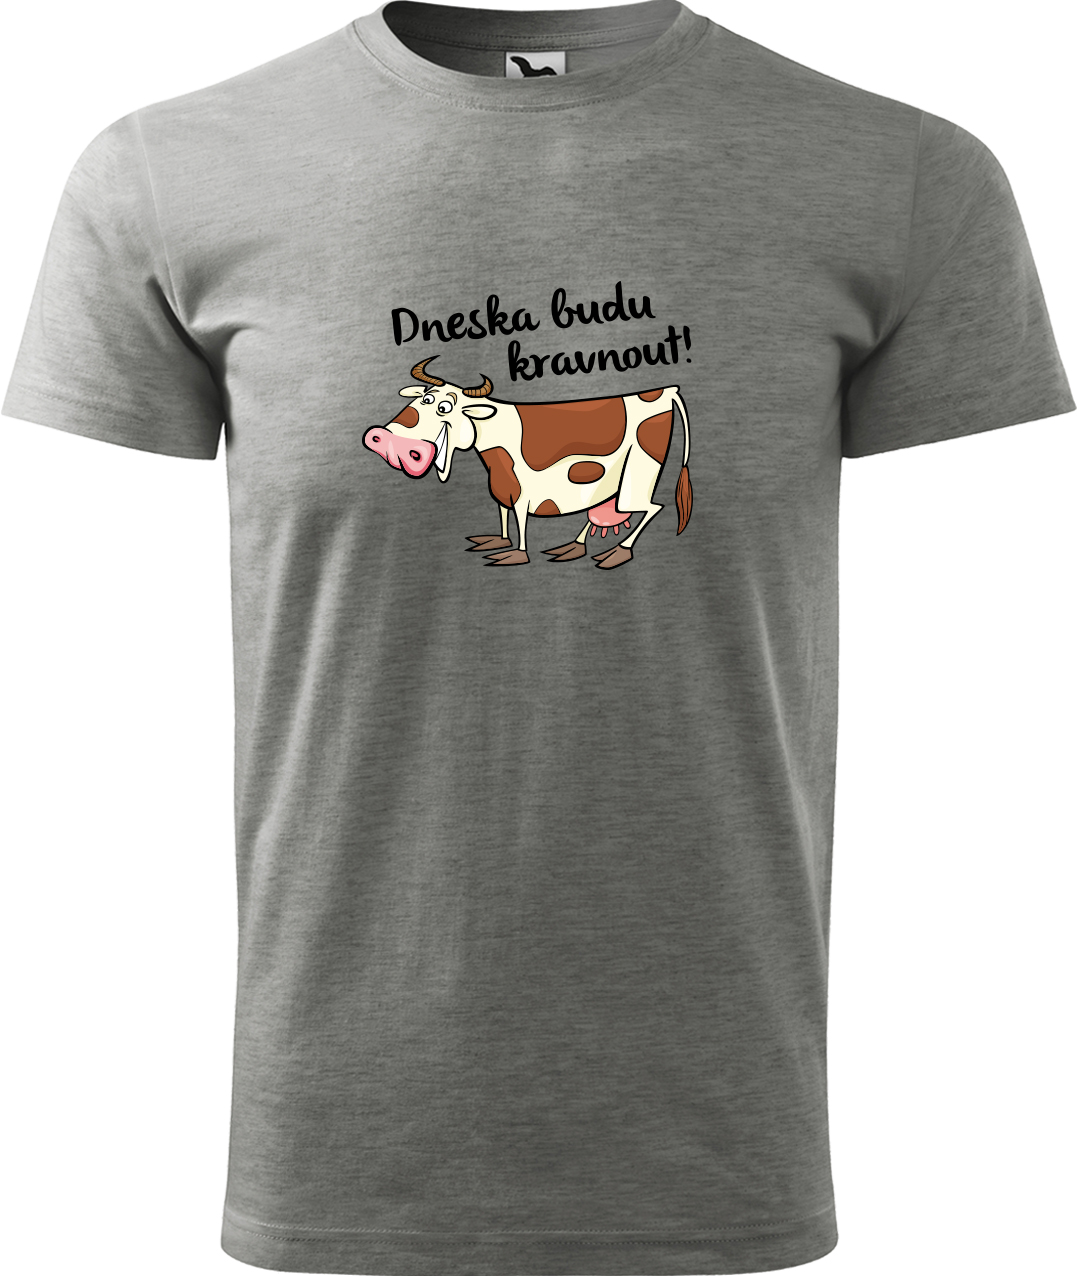 Pánské tričko s krávou - Dneska budu kravnout! Velikost: M, Barva: Tmavě šedý melír (12), Střih: pánský